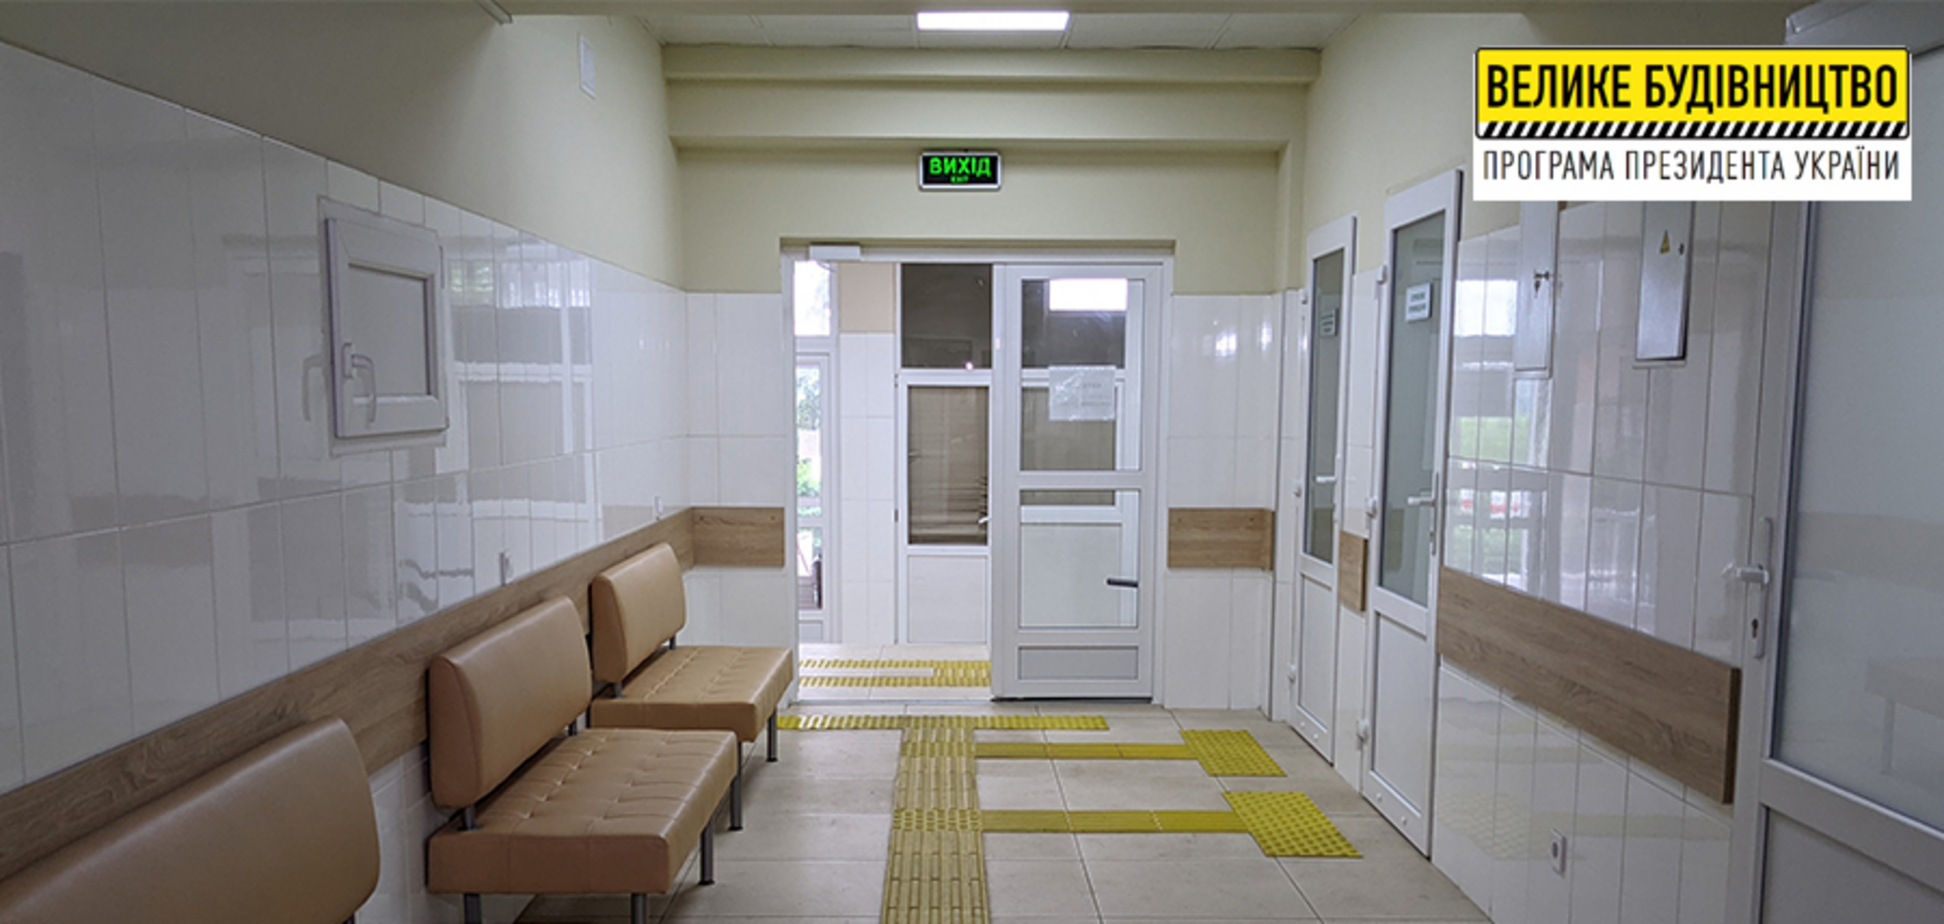 У Куп’янській лікарні завершилася реконструкція приймального відділення екстреної медичної допомоги 